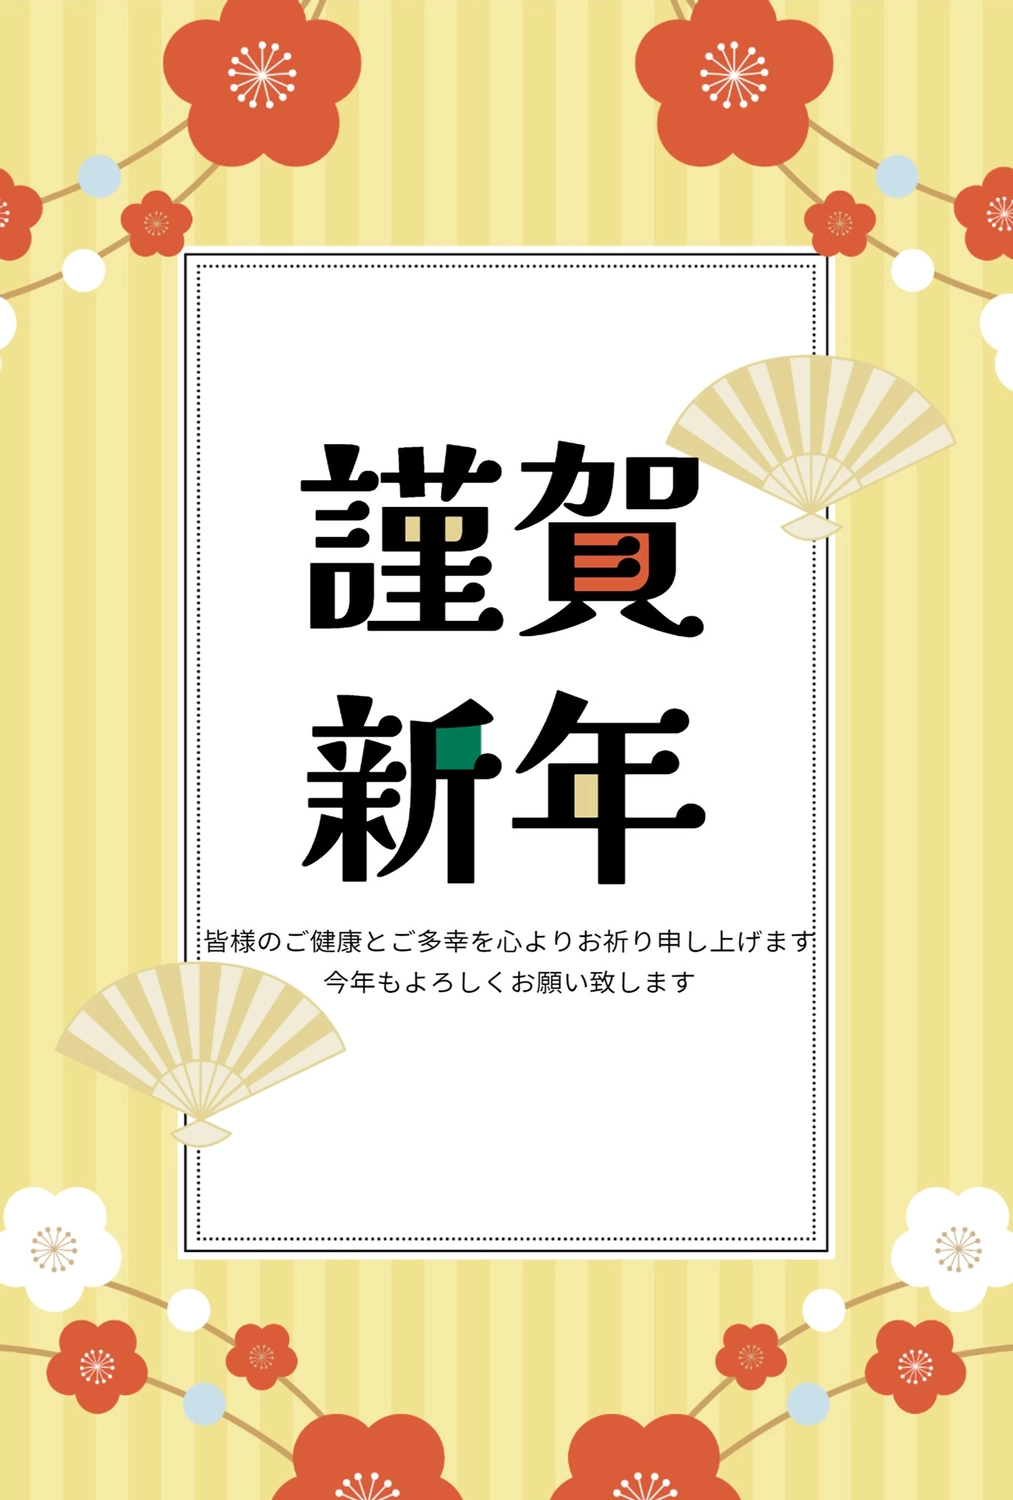 梅の花と謹賀新年, golden (colour, color), concord, business, New Year Card template